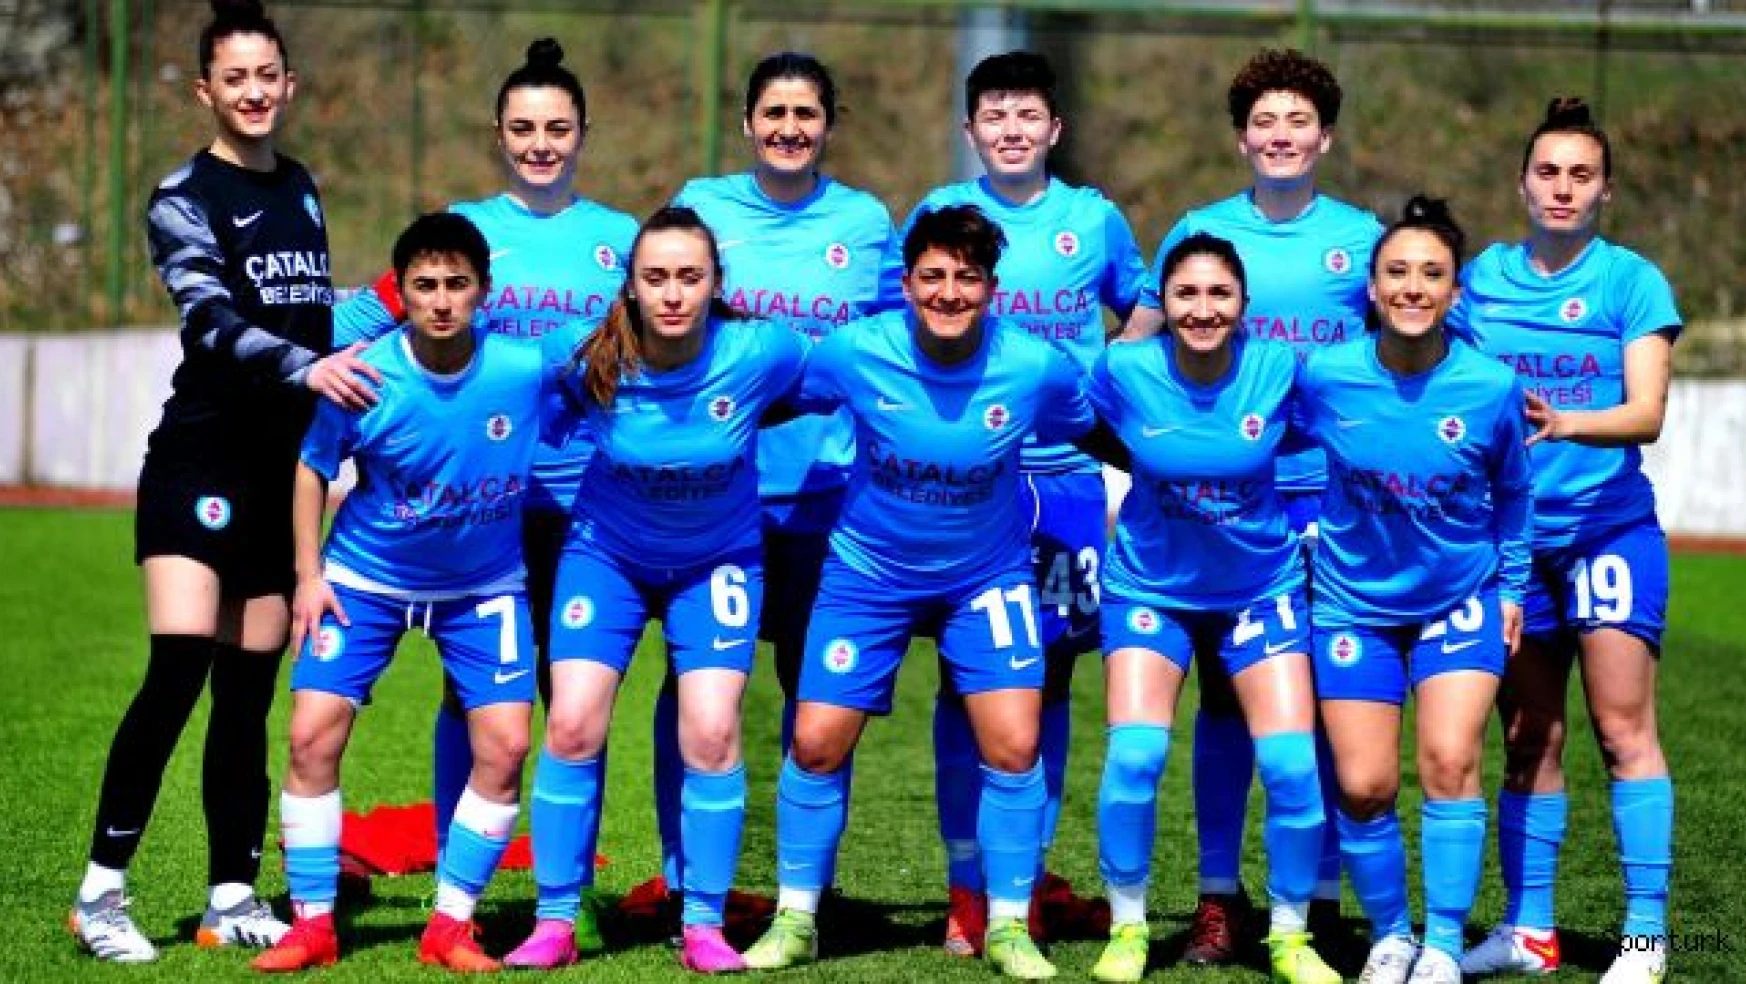 Çatalca'nın Kızları, Kayseri'de Yol'unu buldu: 7-0